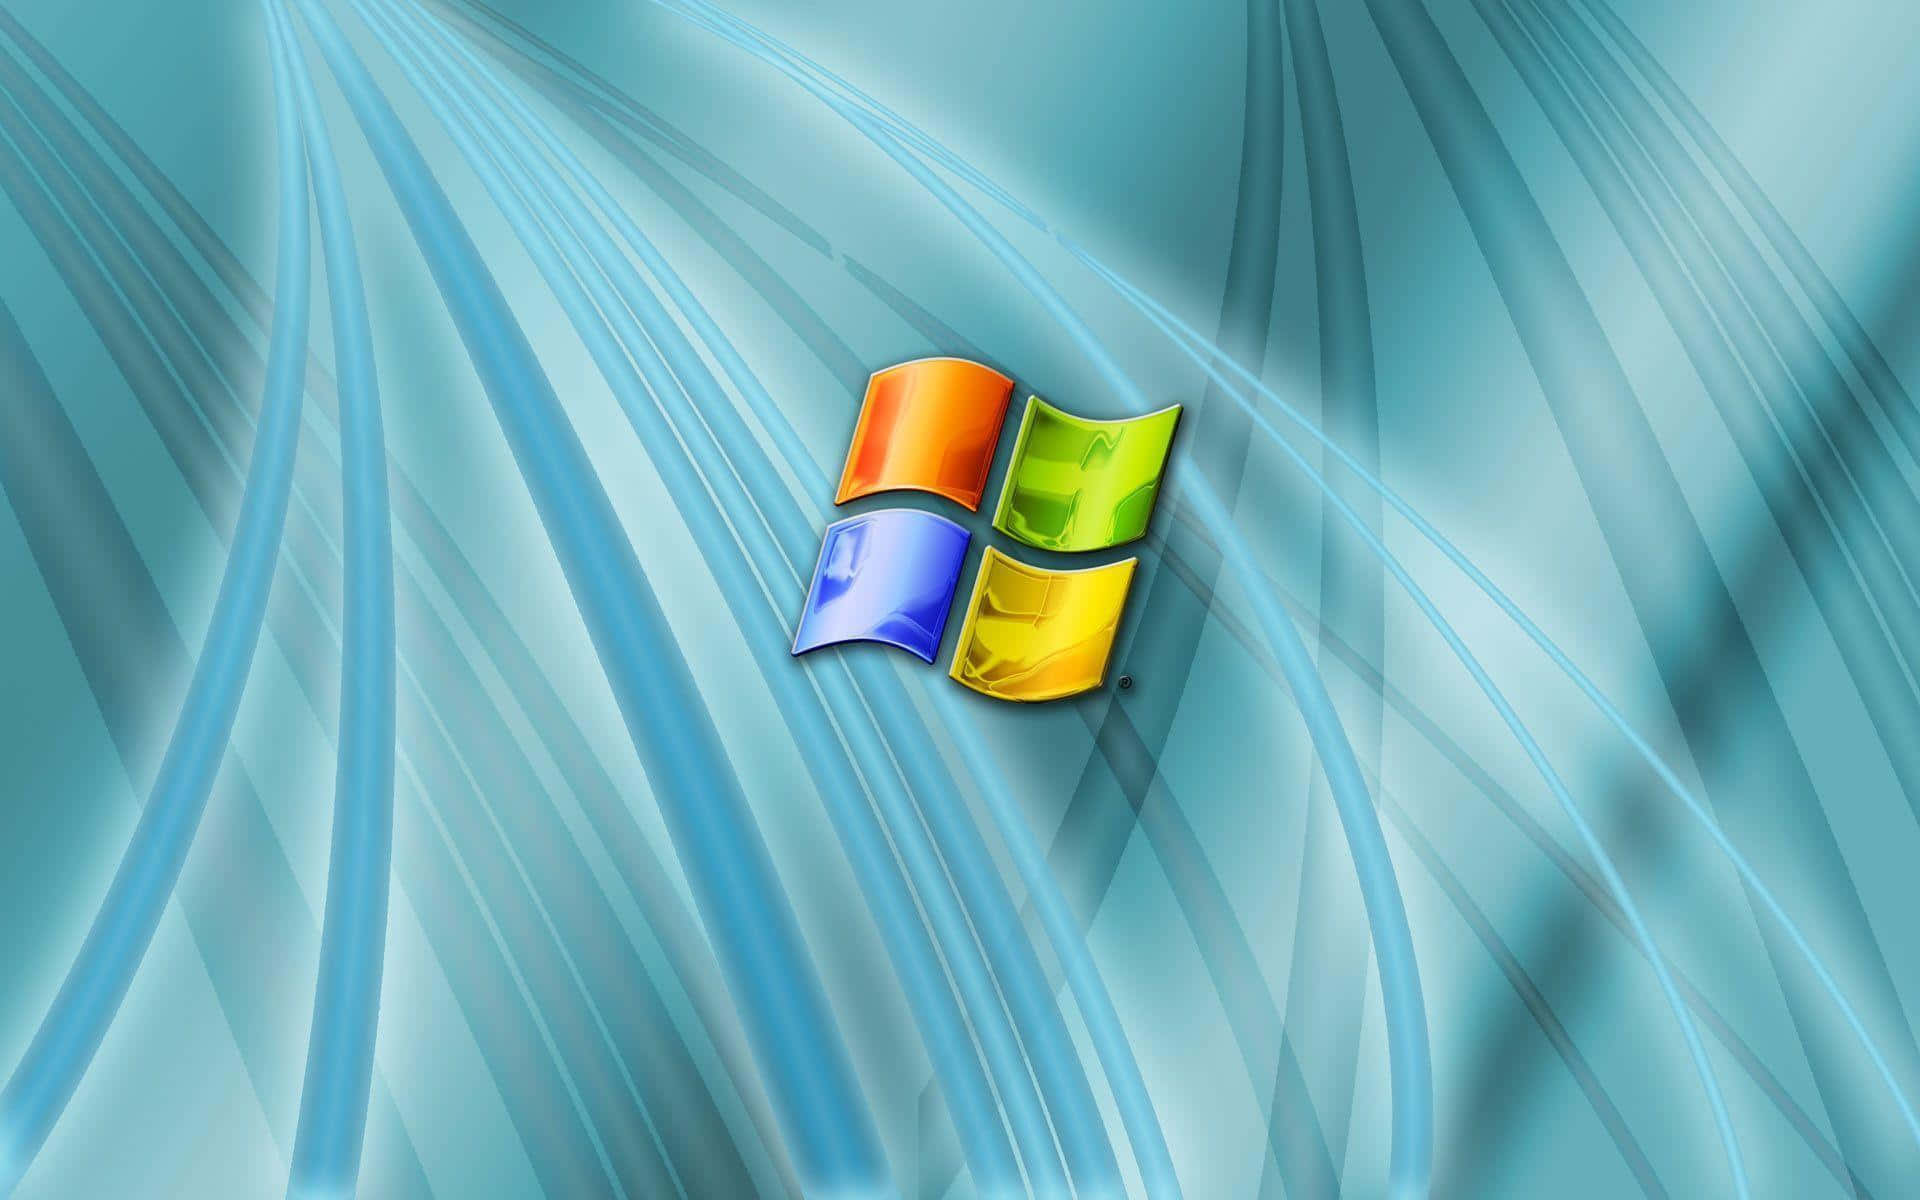 Windows Vista Desktop